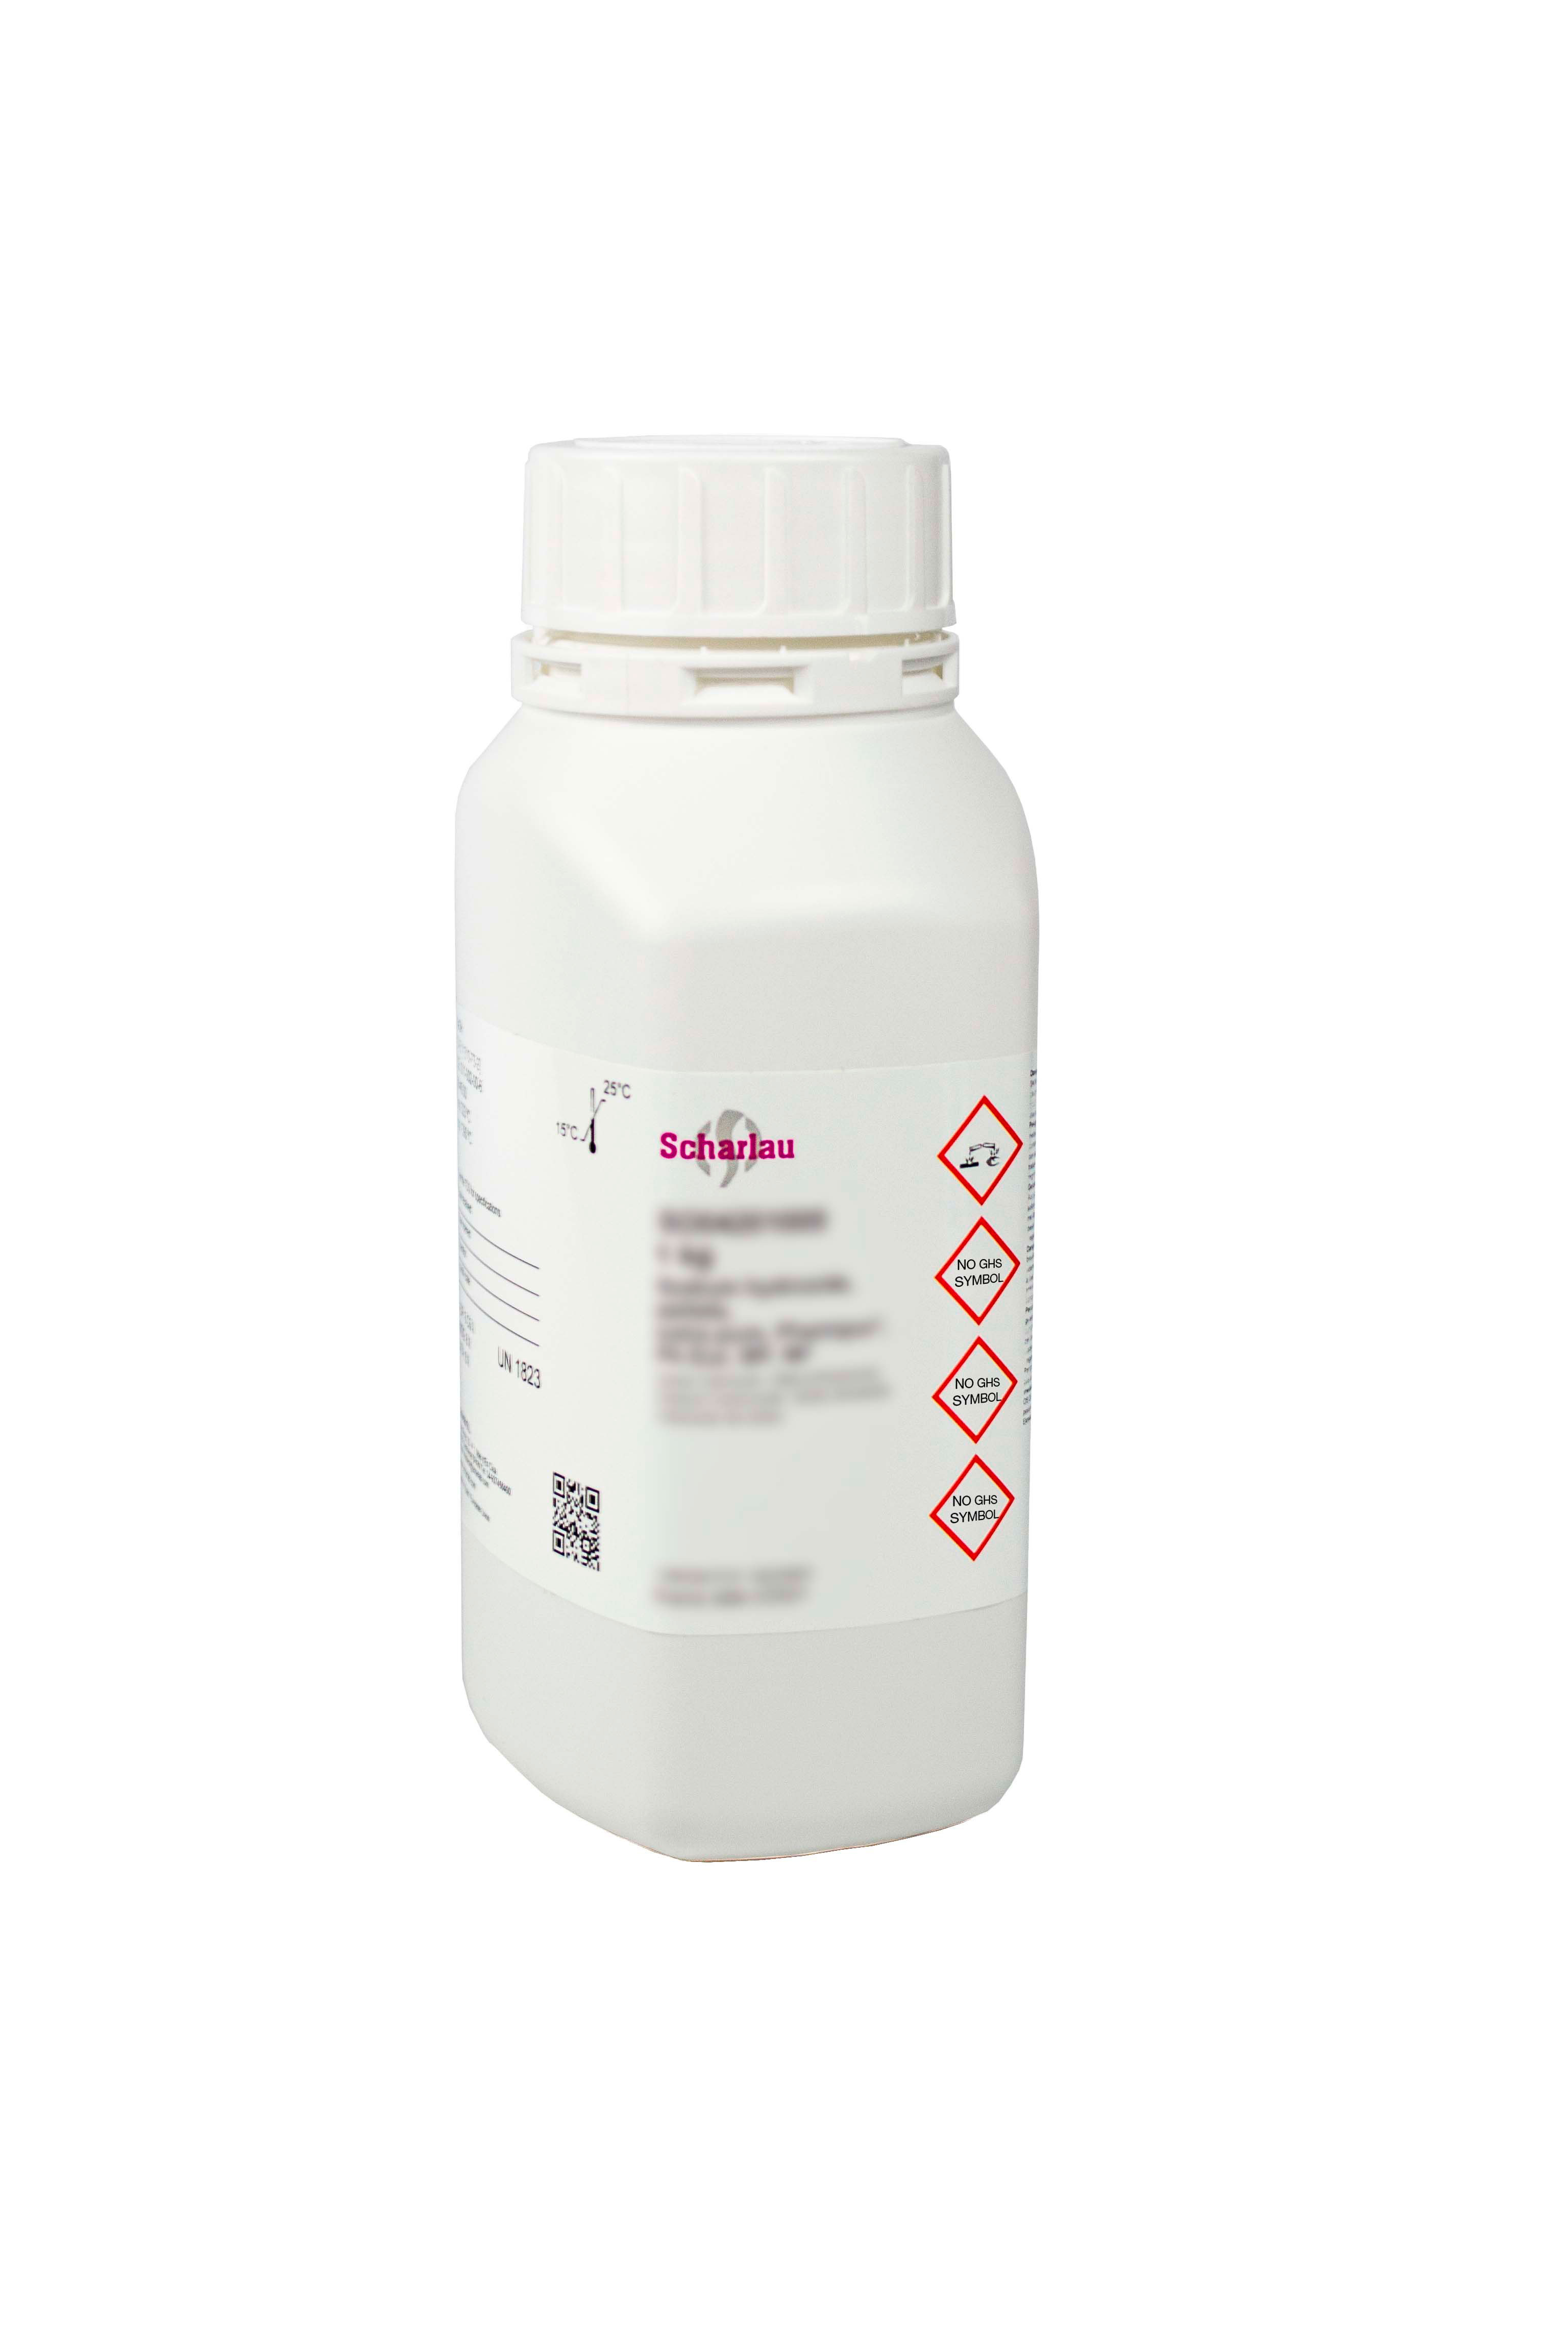 Methyl 4-hydroxybenzoate, Pharmpur®, Ph Eur, BP, NF